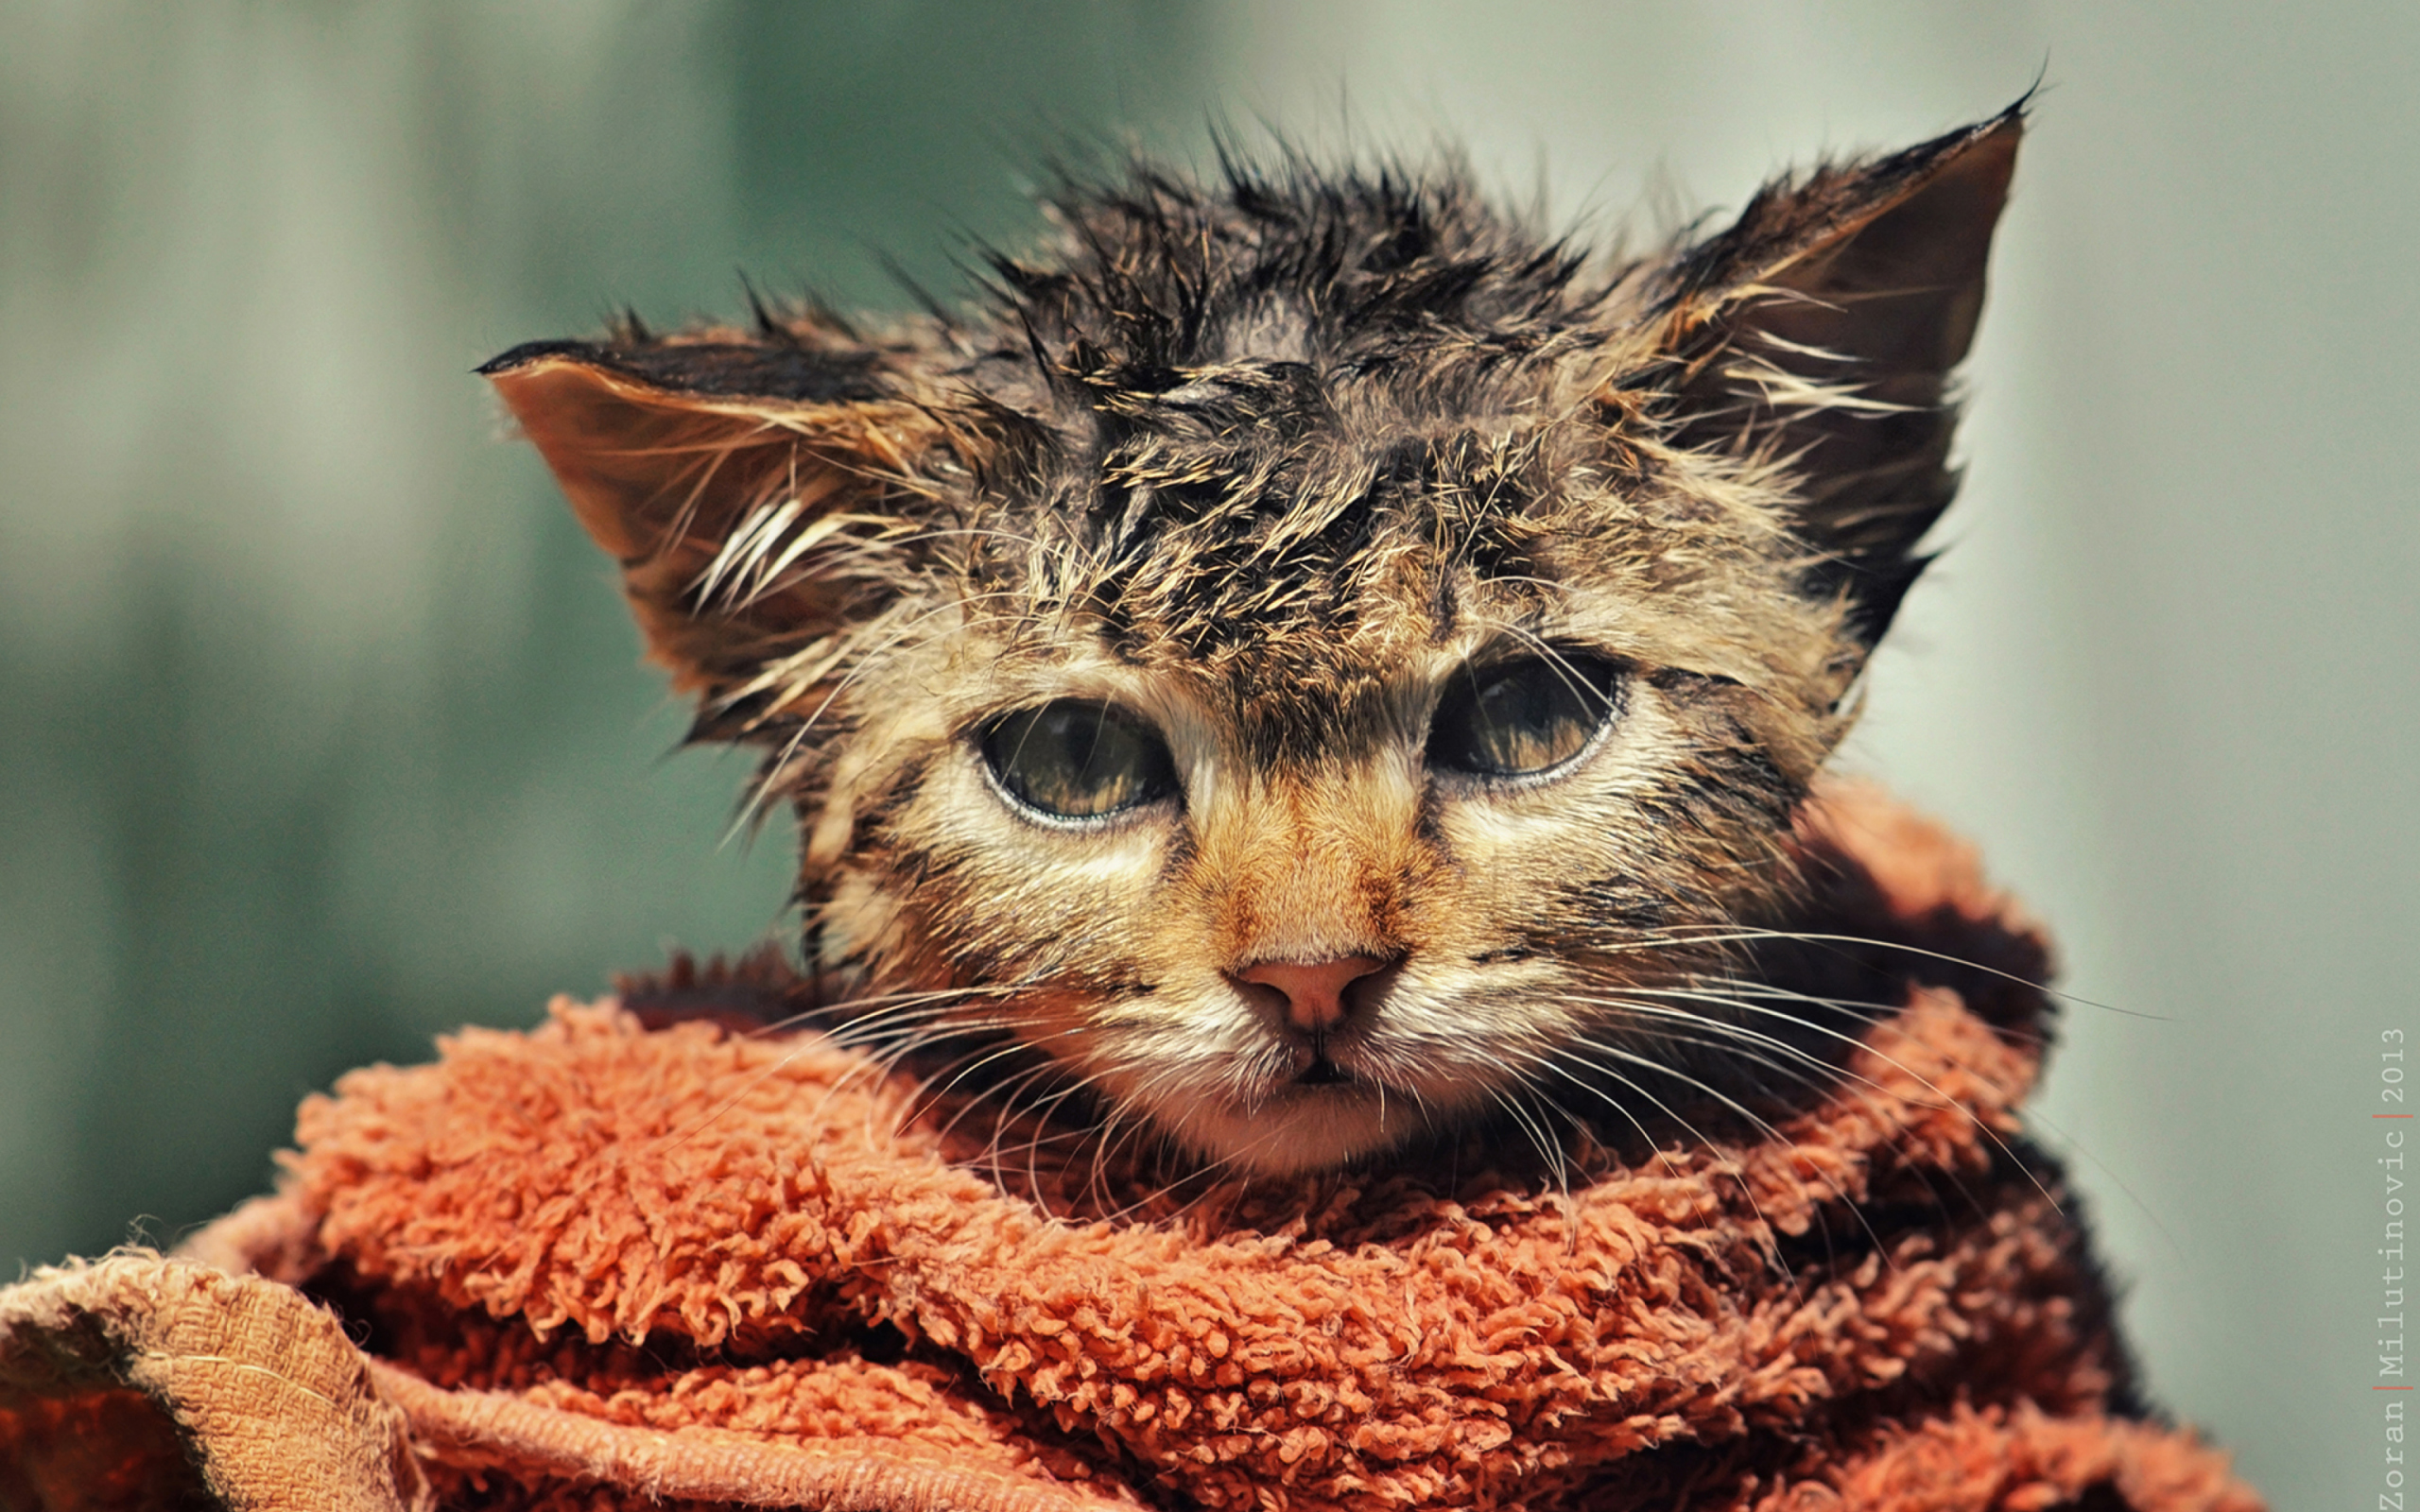 Cute Wet Kitty Cat After Having Shower wallpaper 2560x1600